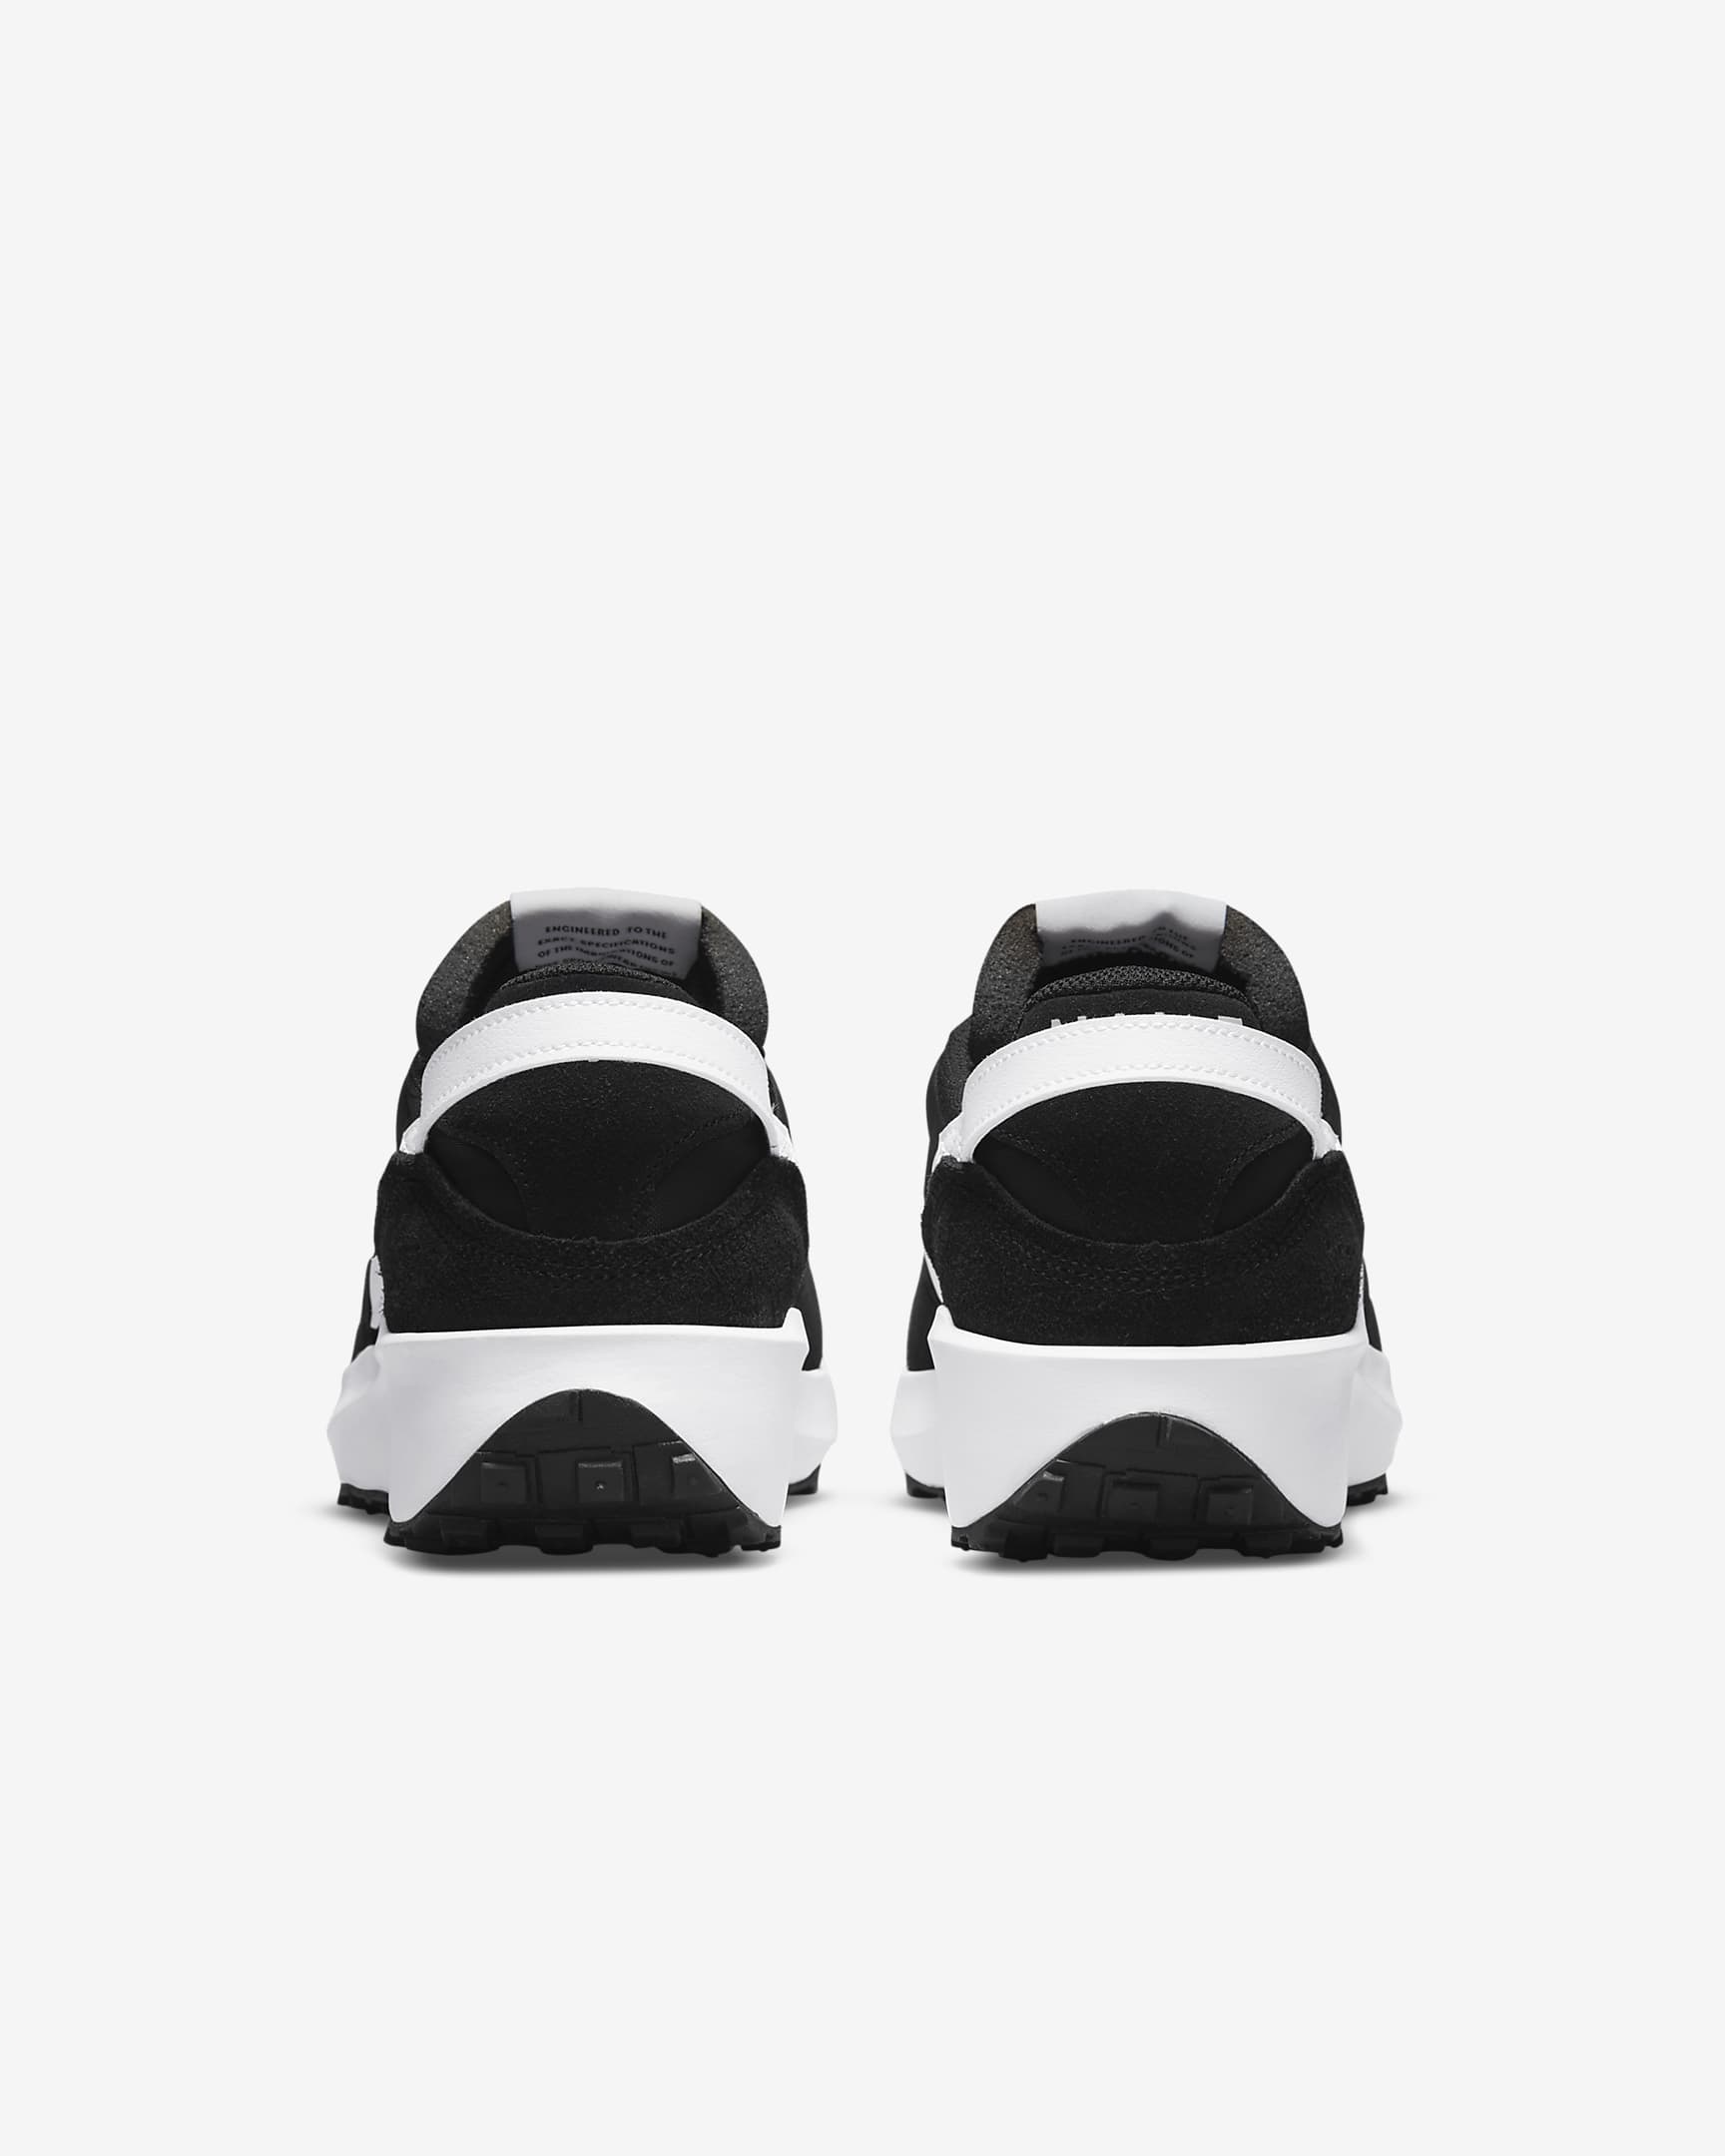 Nike Waffle Debut férficipő - Fekete/Narancs/Clear/Fehér